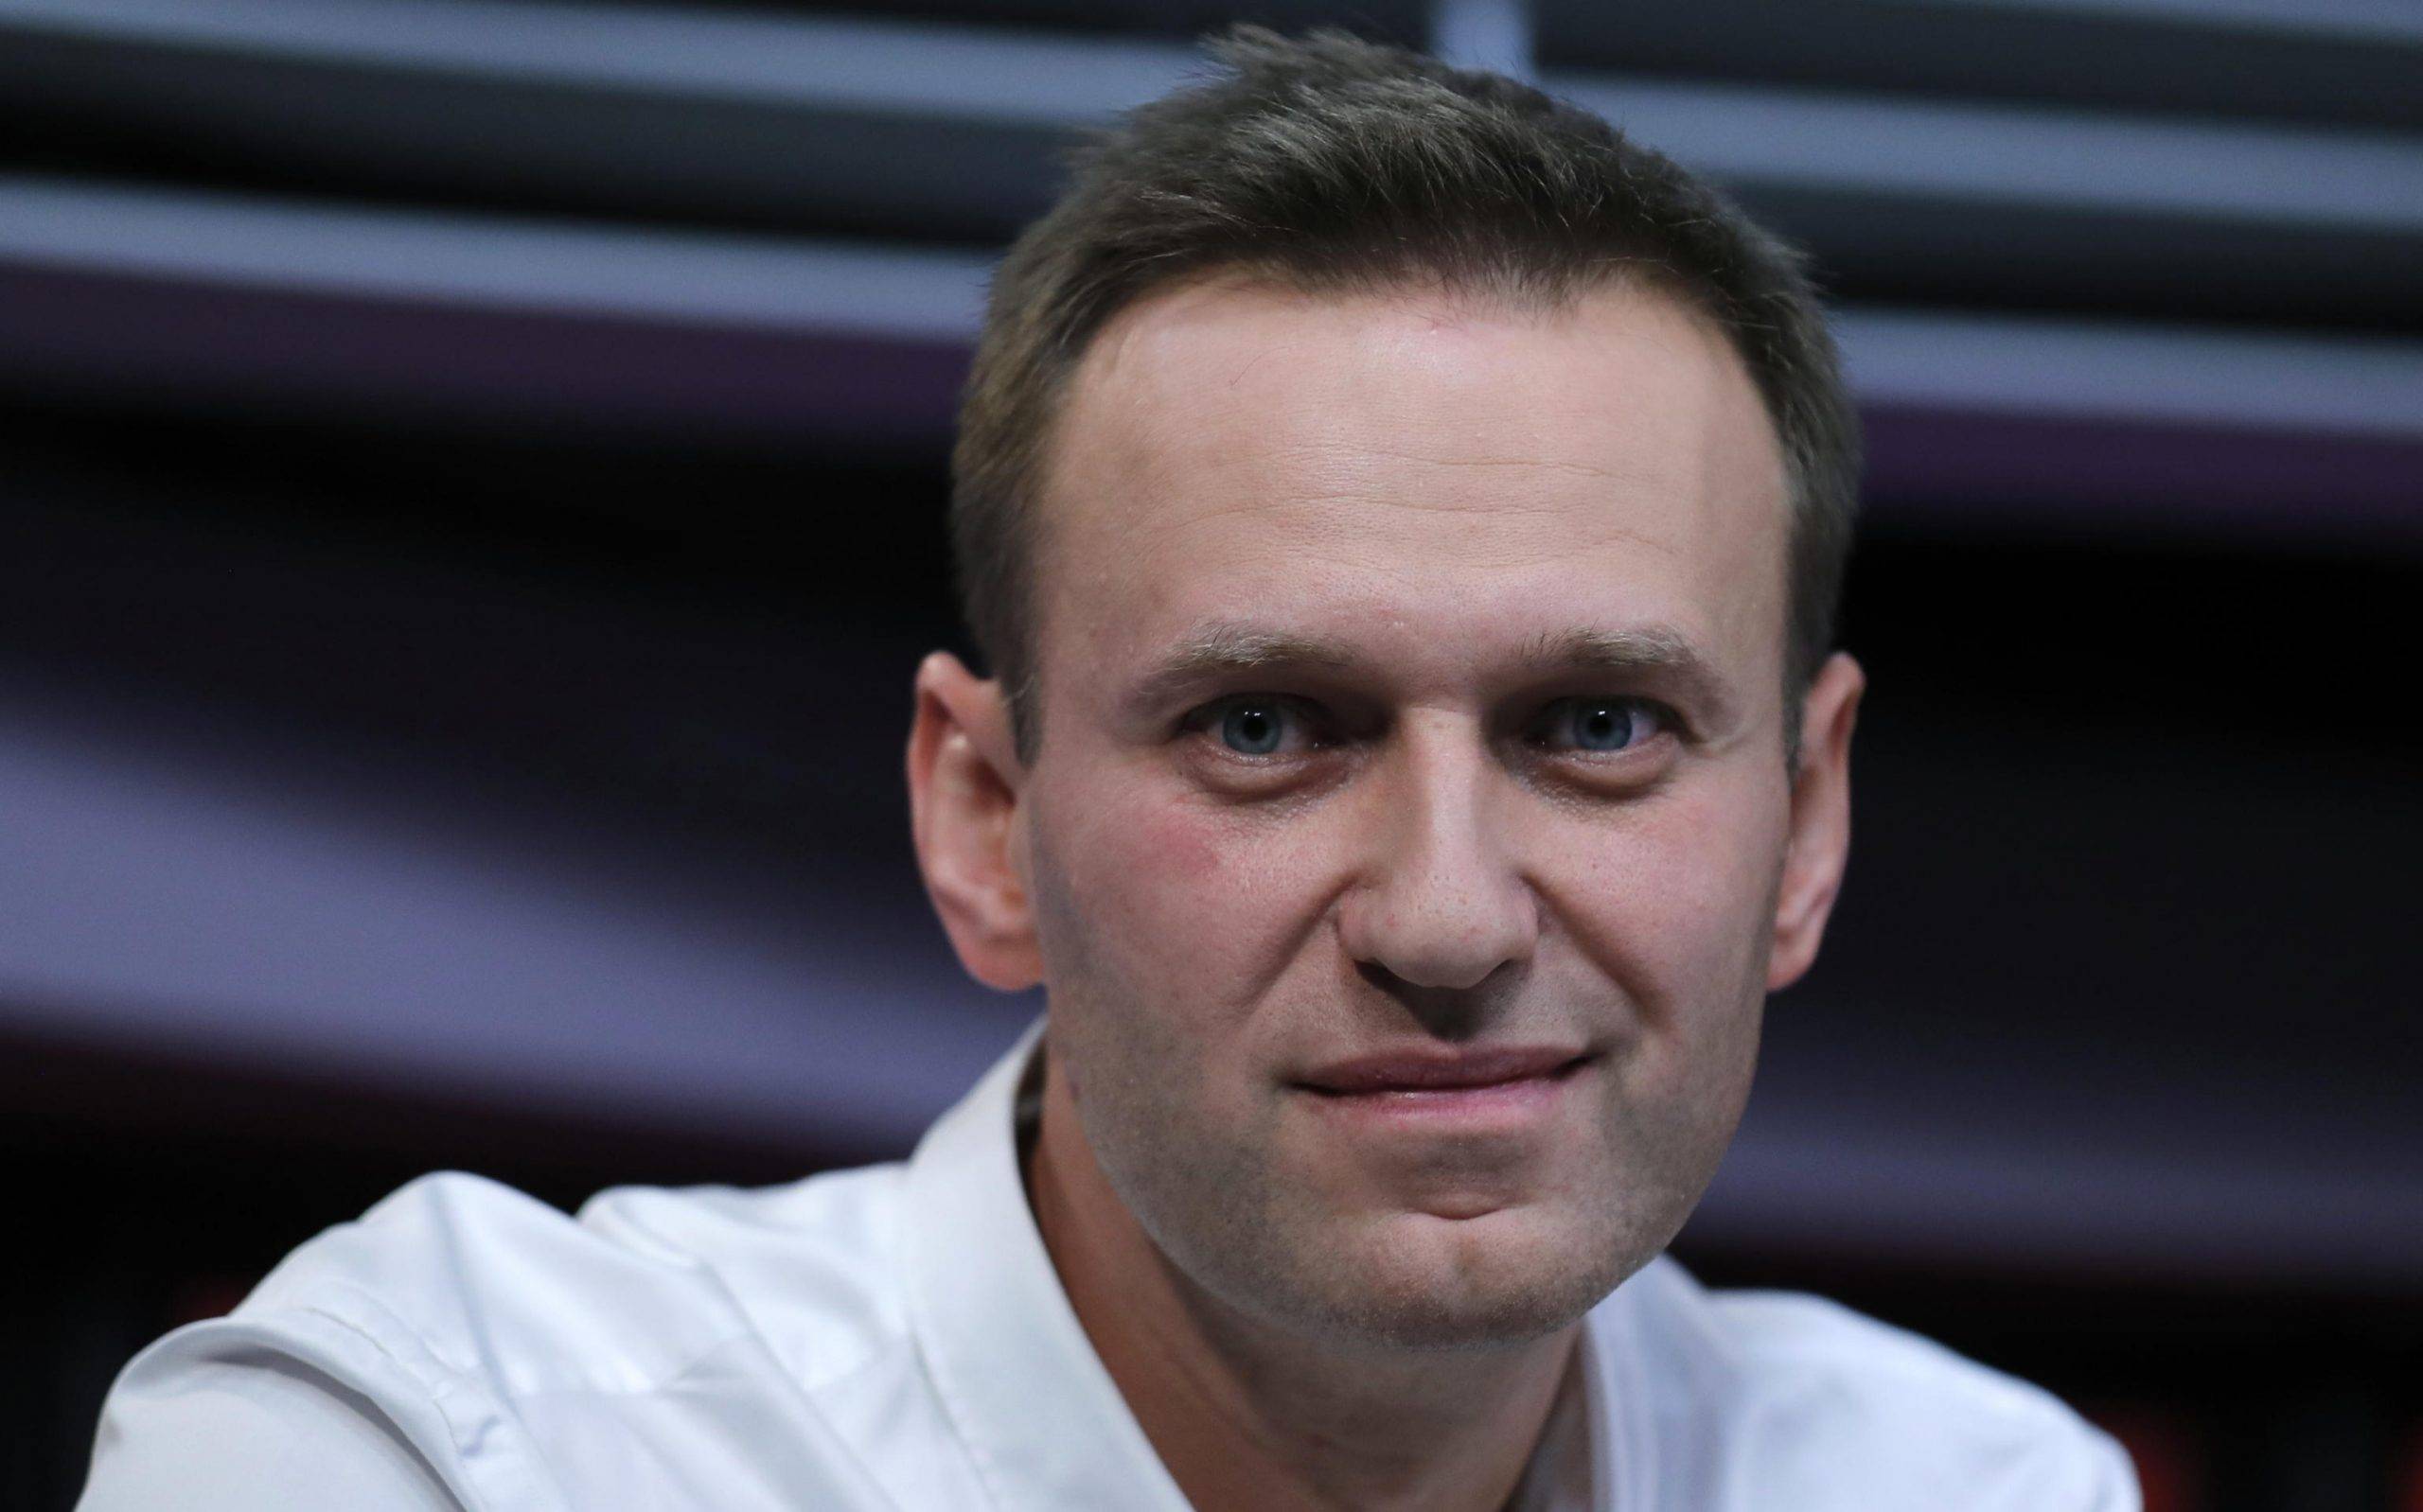 Navalny-scaled.jpg